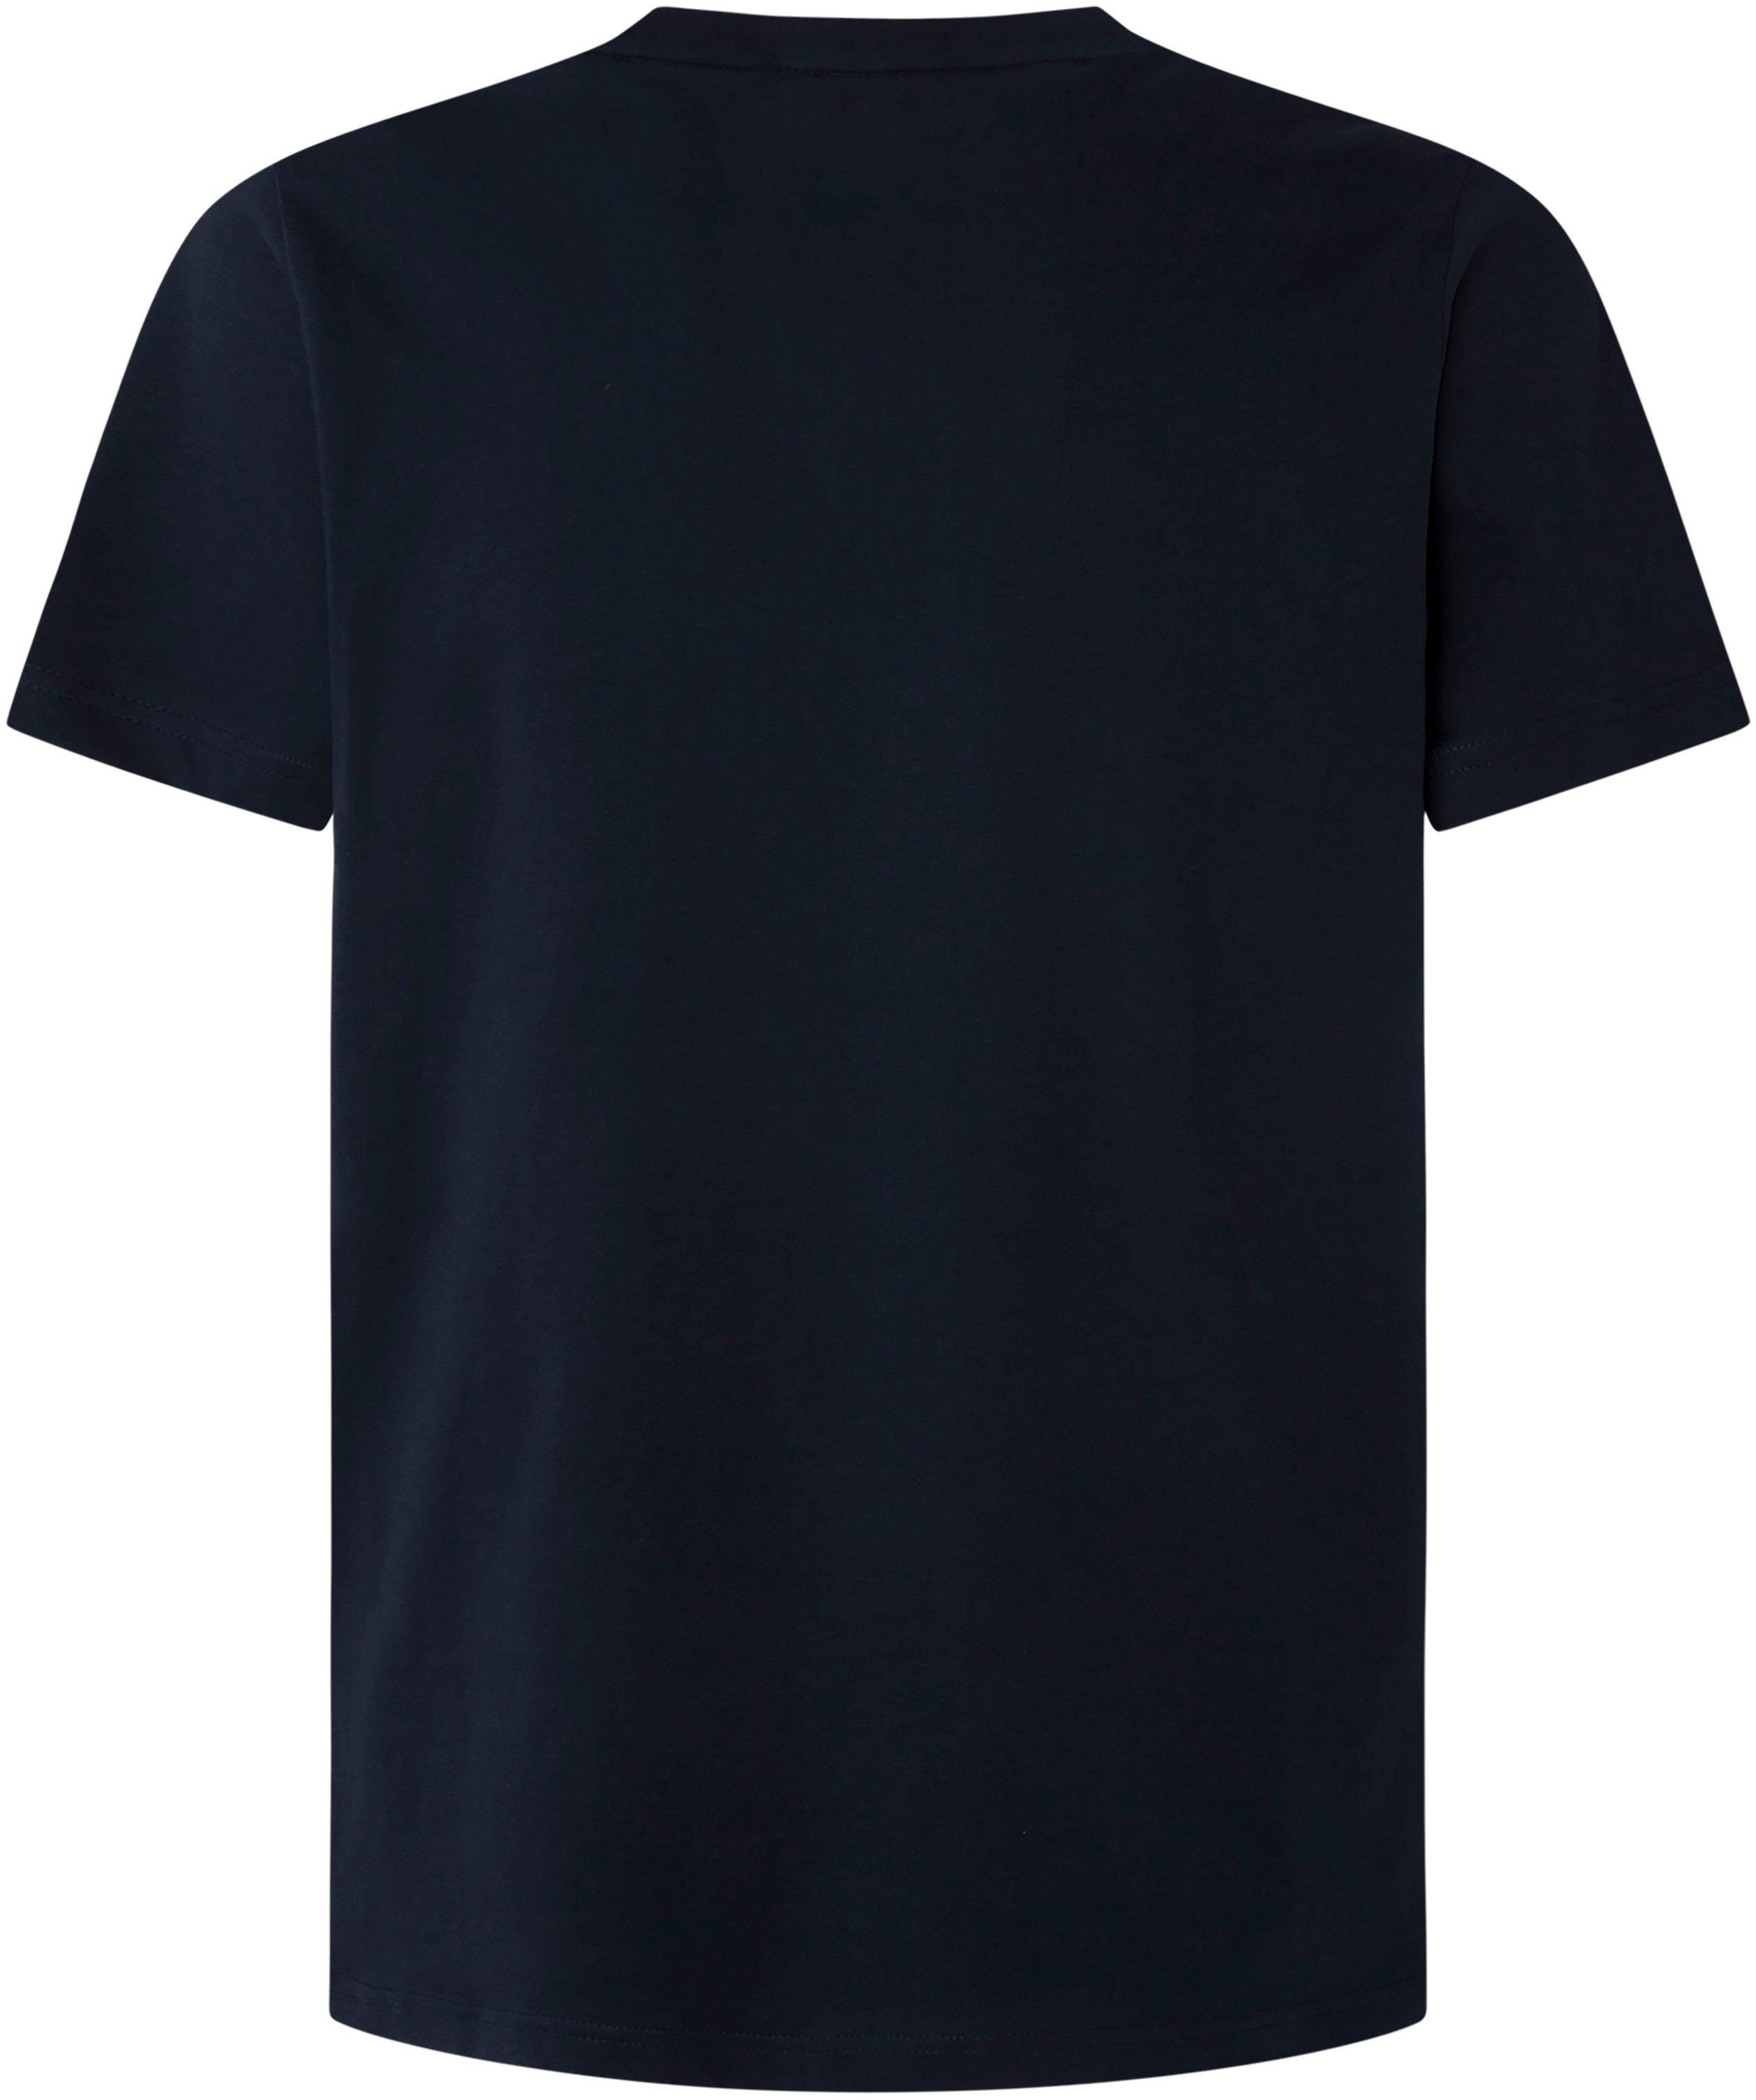 Pepe Jeans T-shirt in shop de online | OTTO